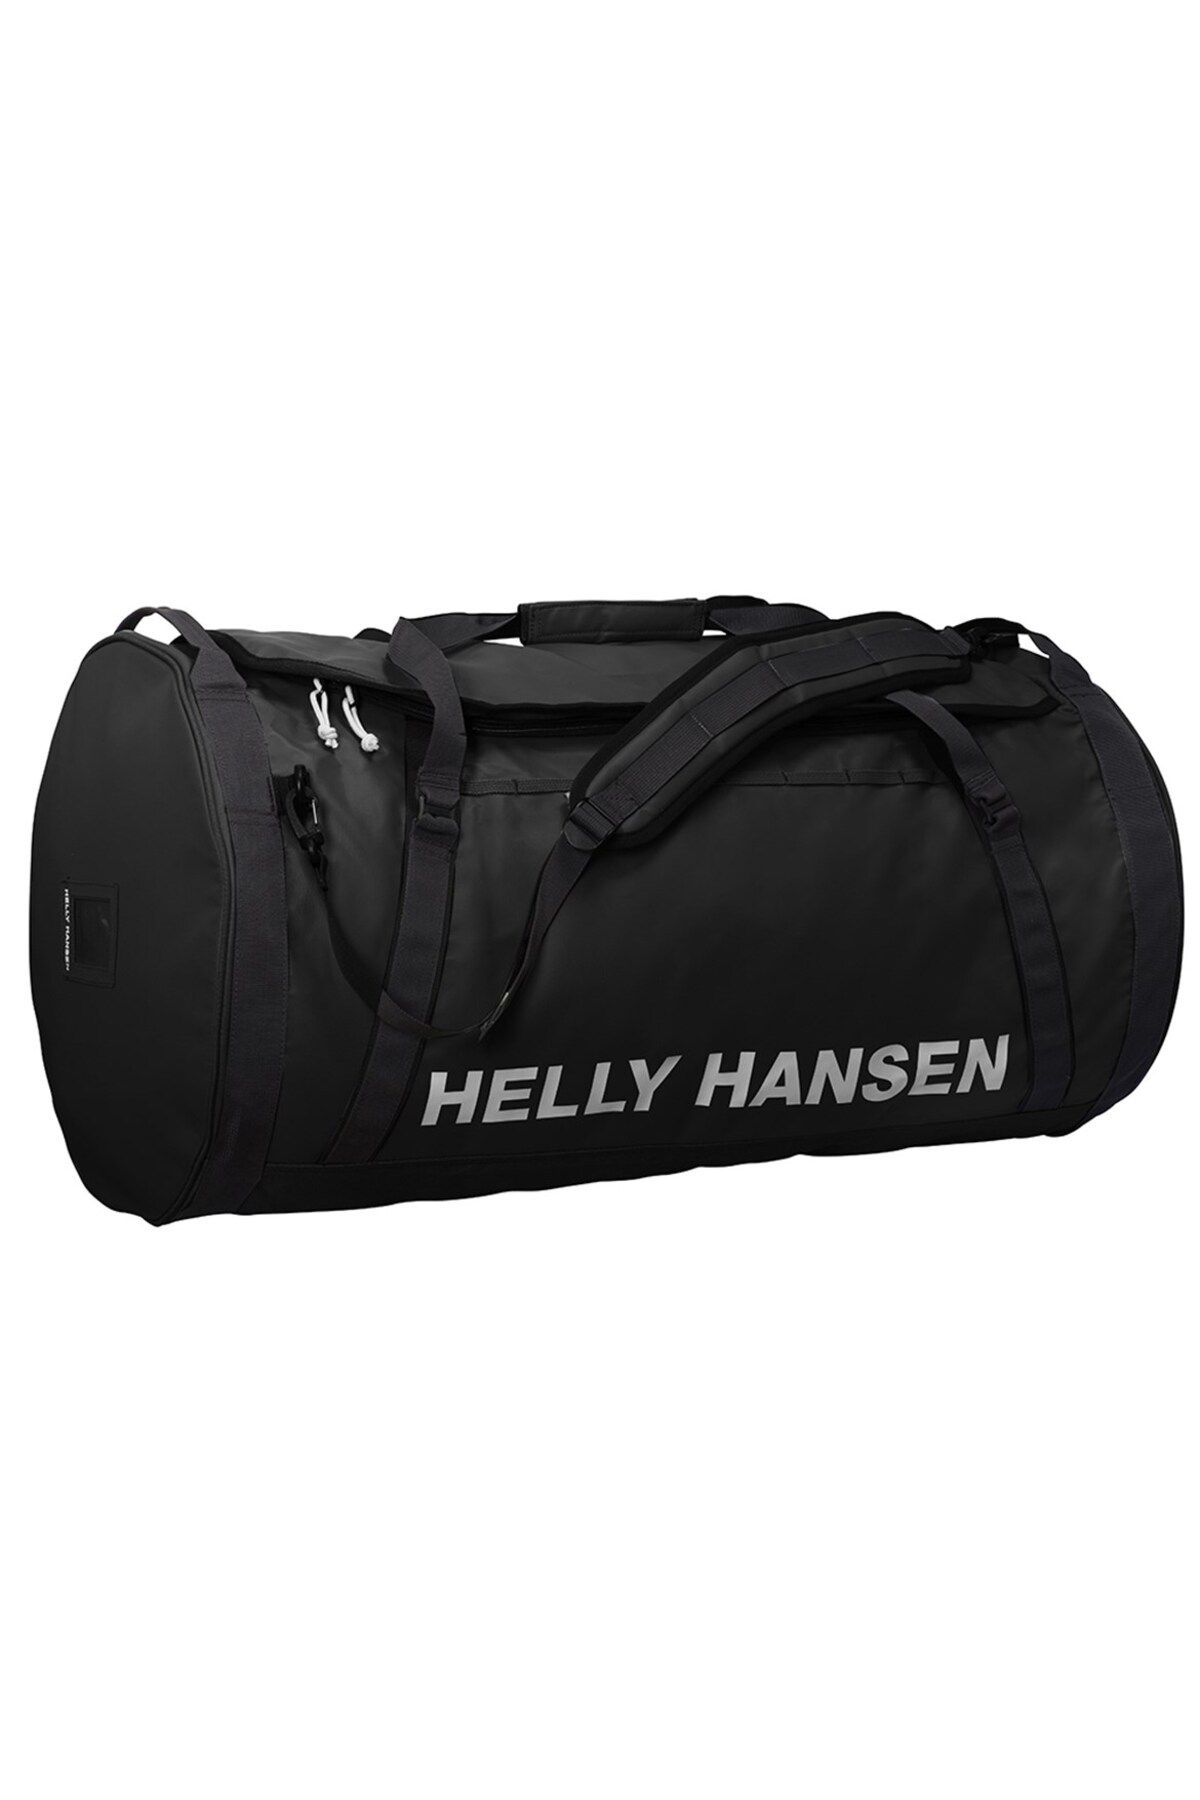 Helly Hansen Hh Hh Duffel Bag 2 30l